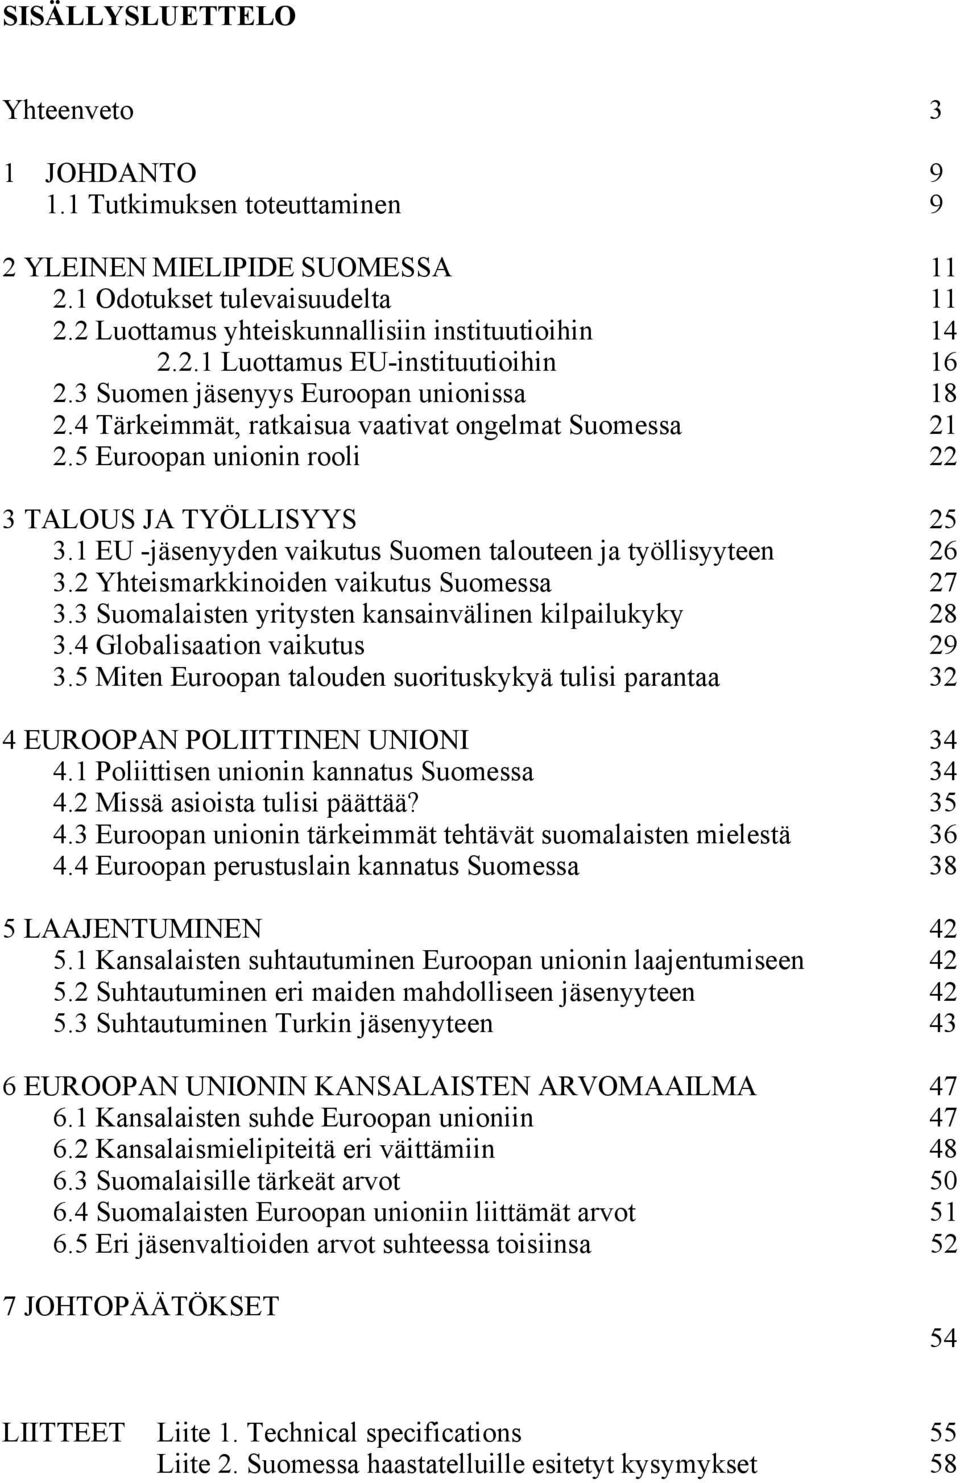 1 EU -jäsenyyden vaikutus Suomen talouteen ja työllisyyteen 26 3.2 Yhteismarkkinoiden vaikutus Suomessa 27 3.3 Suomalaisten yritysten kansainvälinen kilpailukyky 28 3.4 Globalisaation vaikutus 29 3.